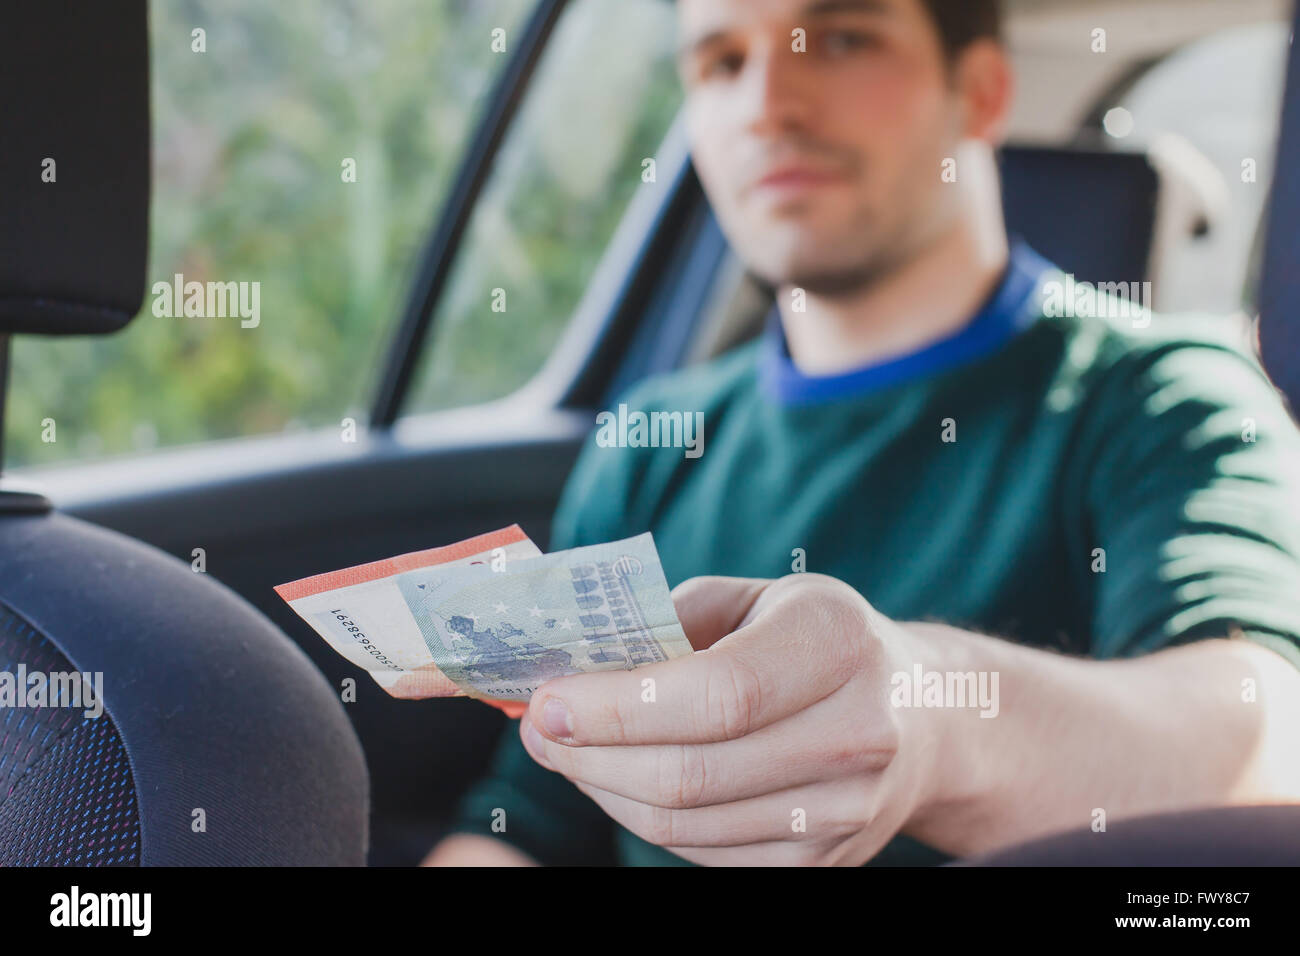 Pagar en efectivo en taxi, el acercamiento de la mano del pasajero dando dinero al conductor en el coche Foto de stock